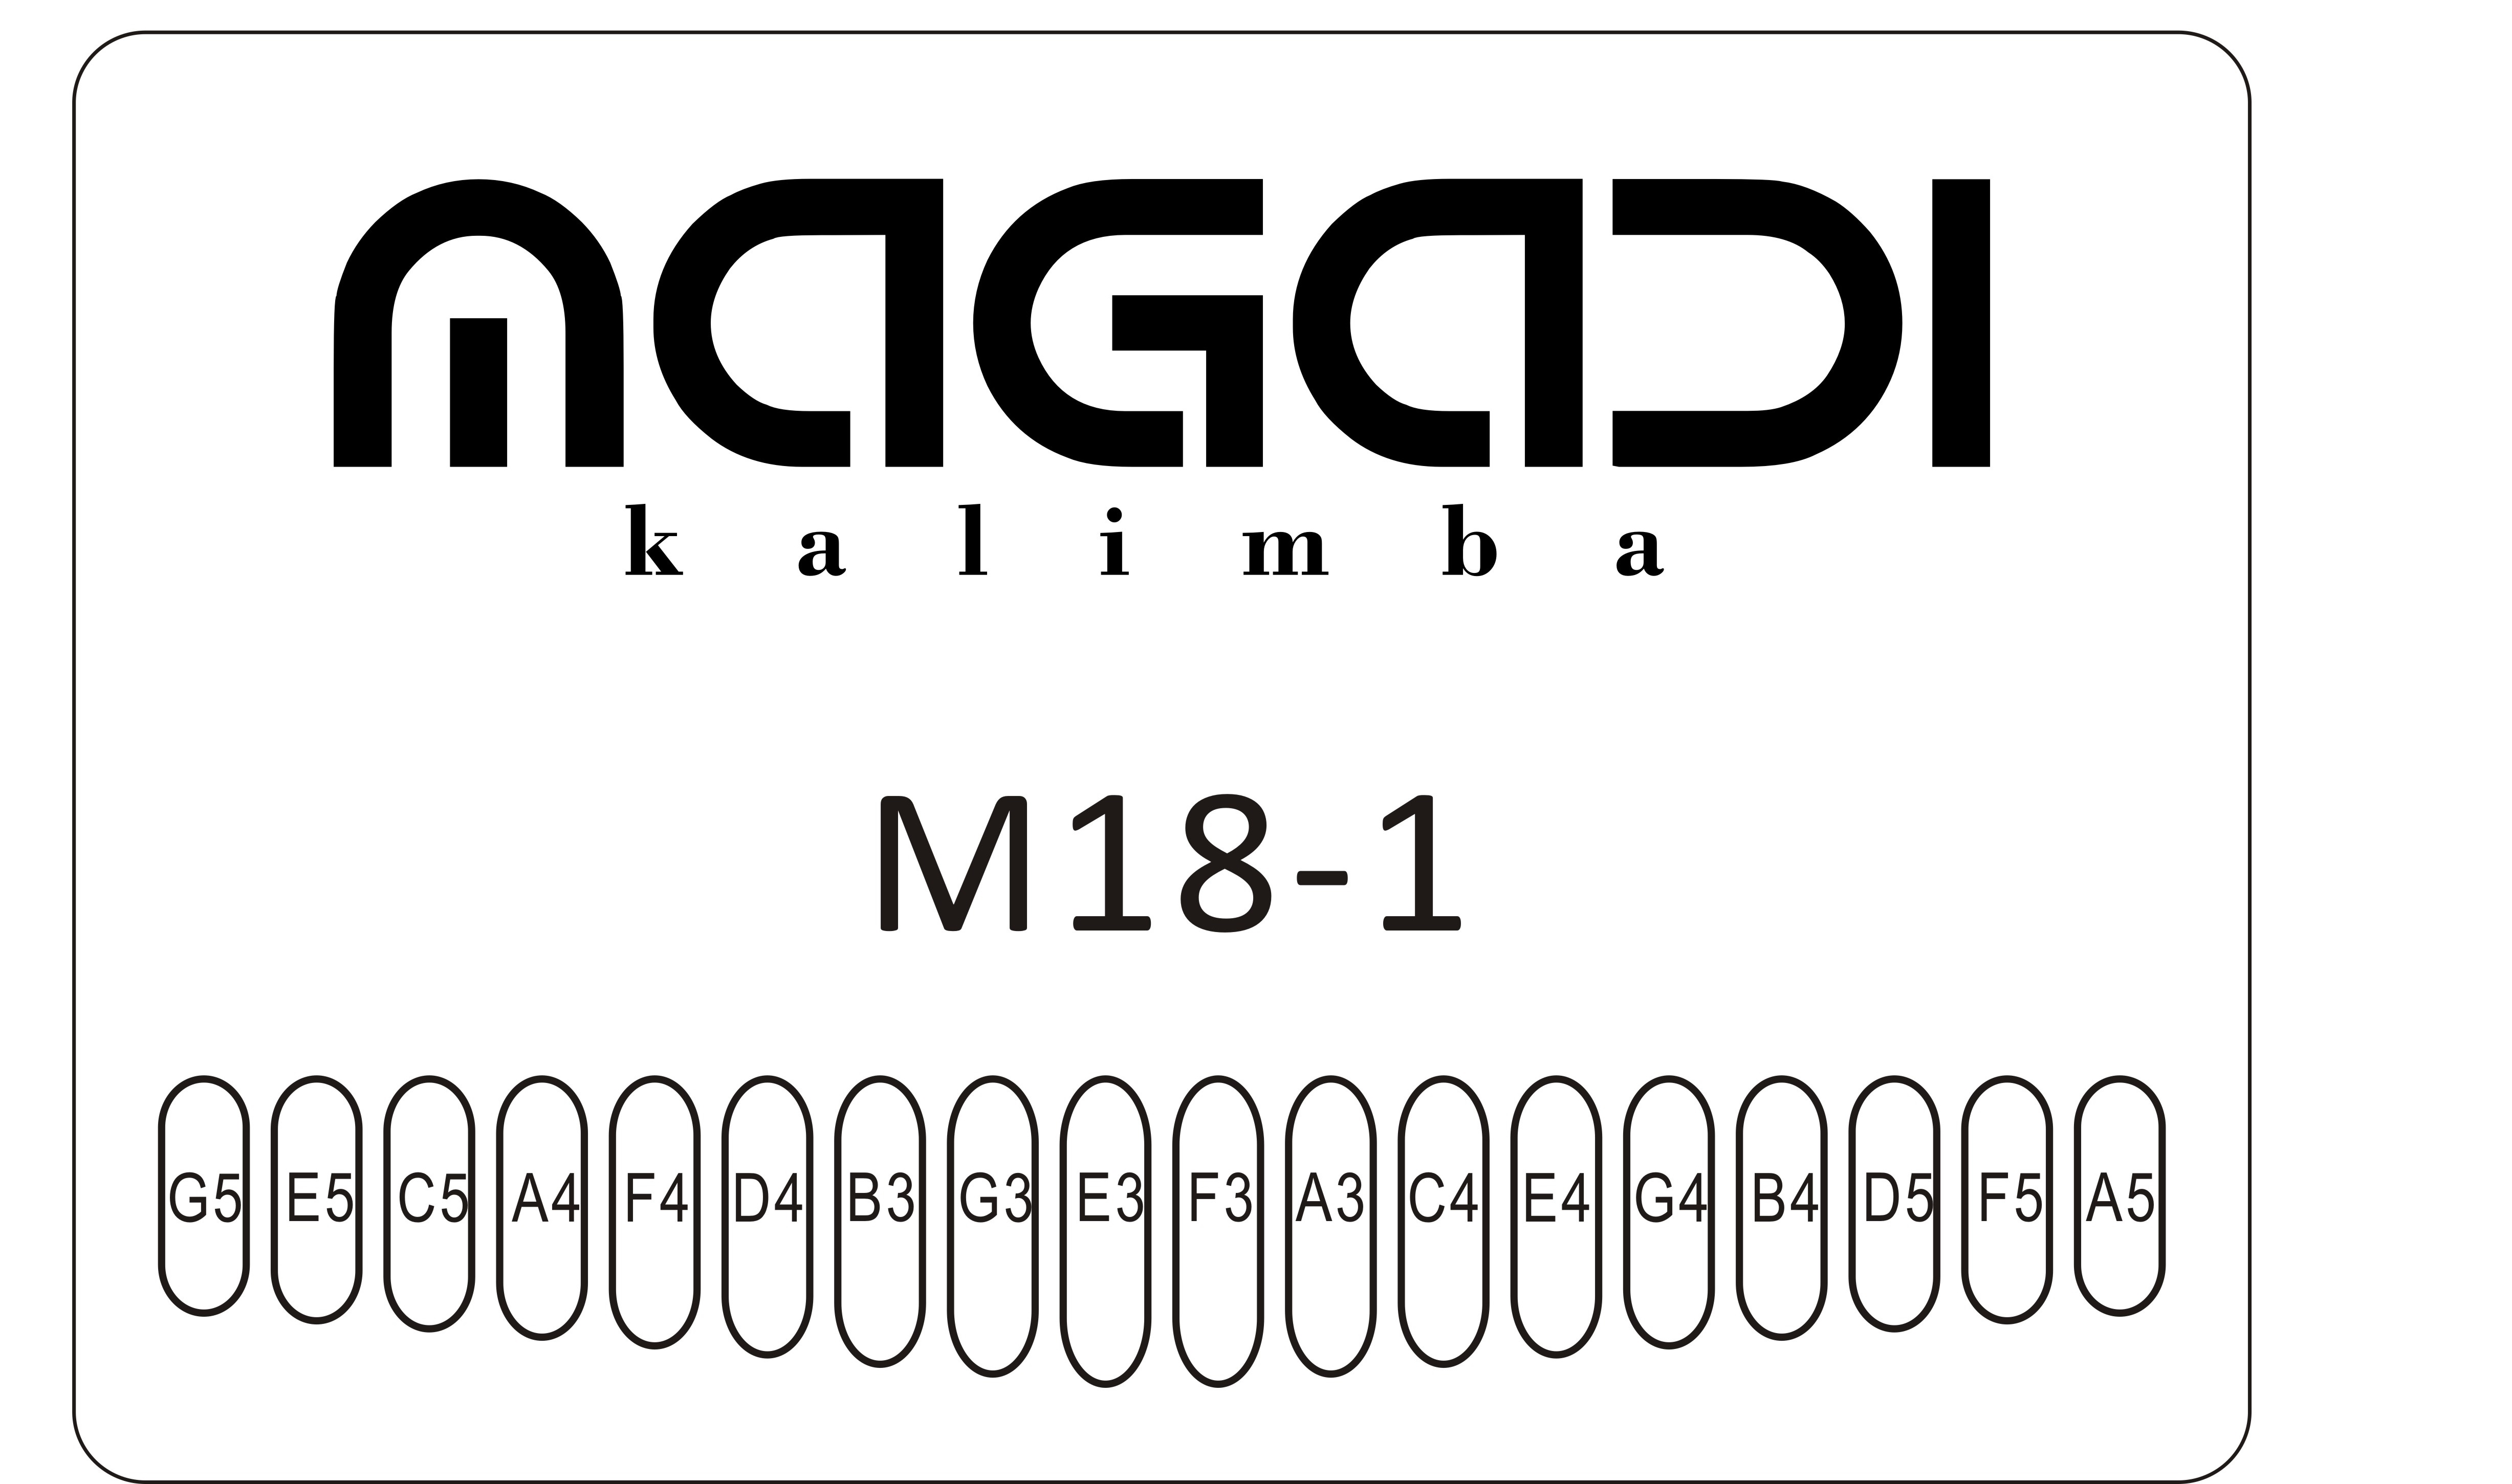 Magadi Kalimba M18